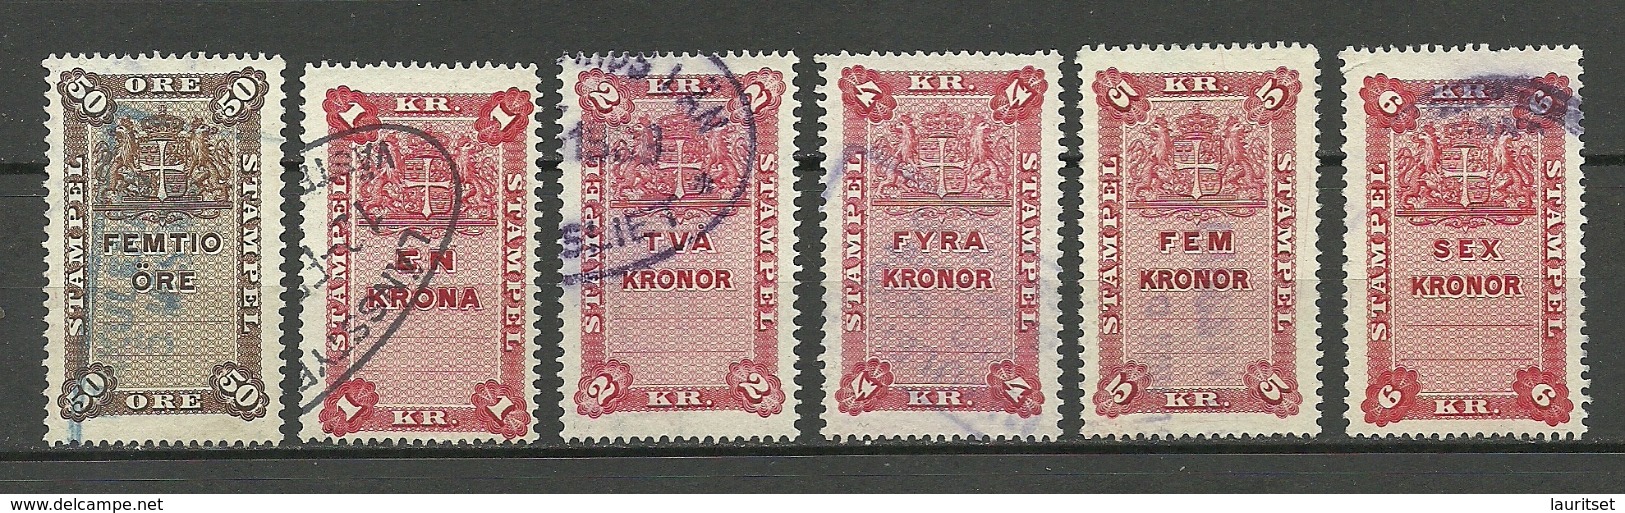 SCHWEDEN Sweden Ca 1880-1895 Lot 6 Stempelmarken Documentary Stamps O - Fiscales